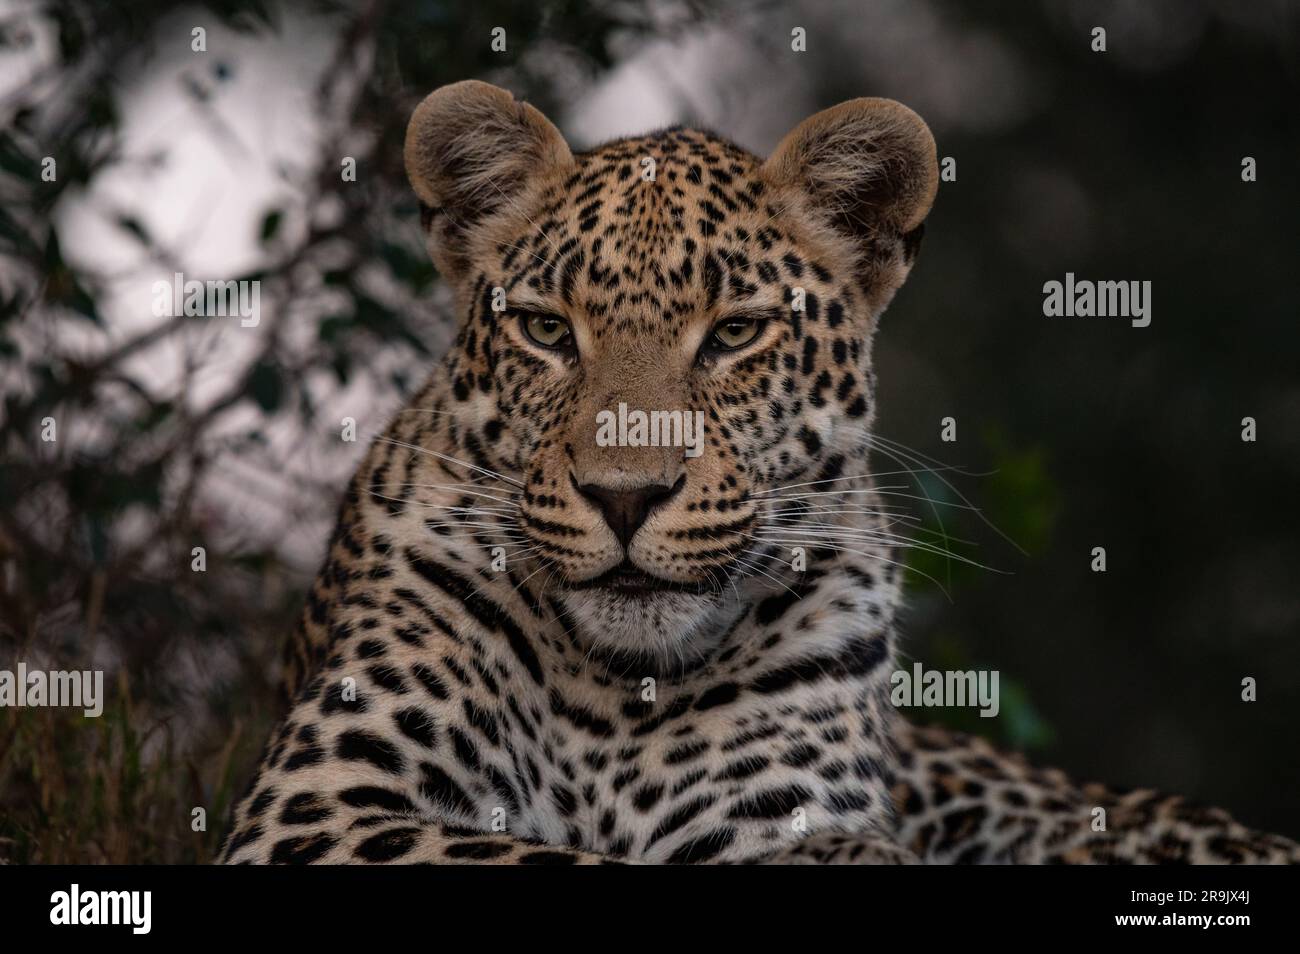 A close-up portrait of a leopard, Panthera pardus. Stock Photo